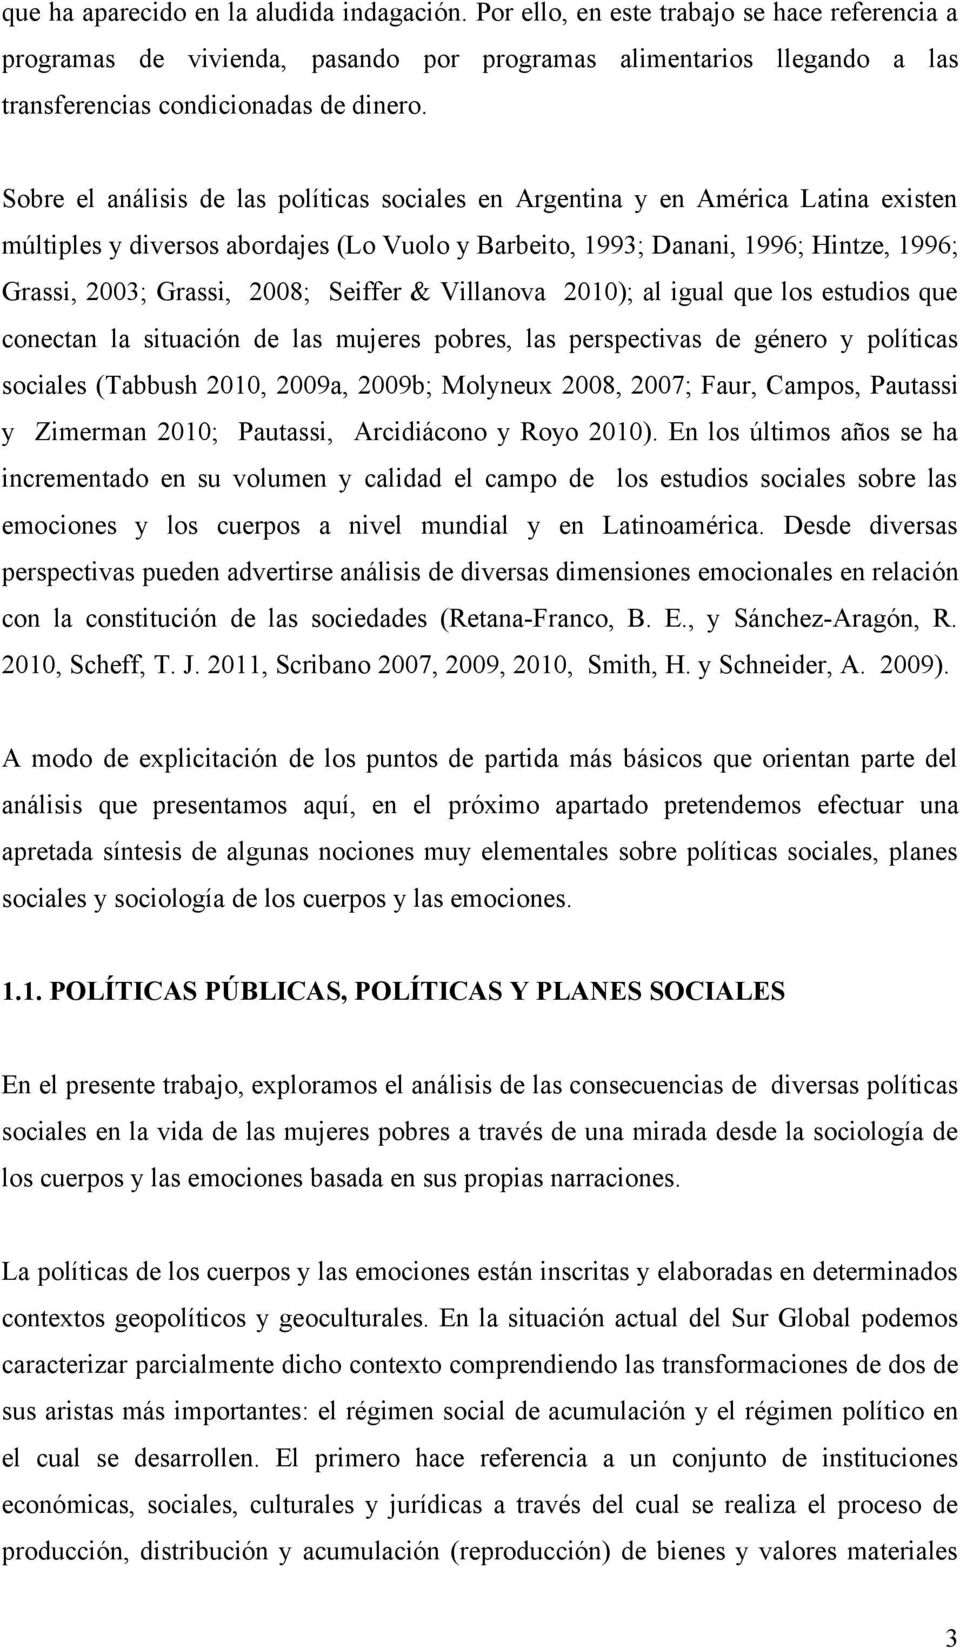 Sobre el análisis de las políticas sociales en Argentina y en América Latina existen múltiples y diversos abordajes (Lo Vuolo y Barbeito, 1993; Danani, 1996; Hintze, 1996; Grassi, 2003; Grassi, 2008;